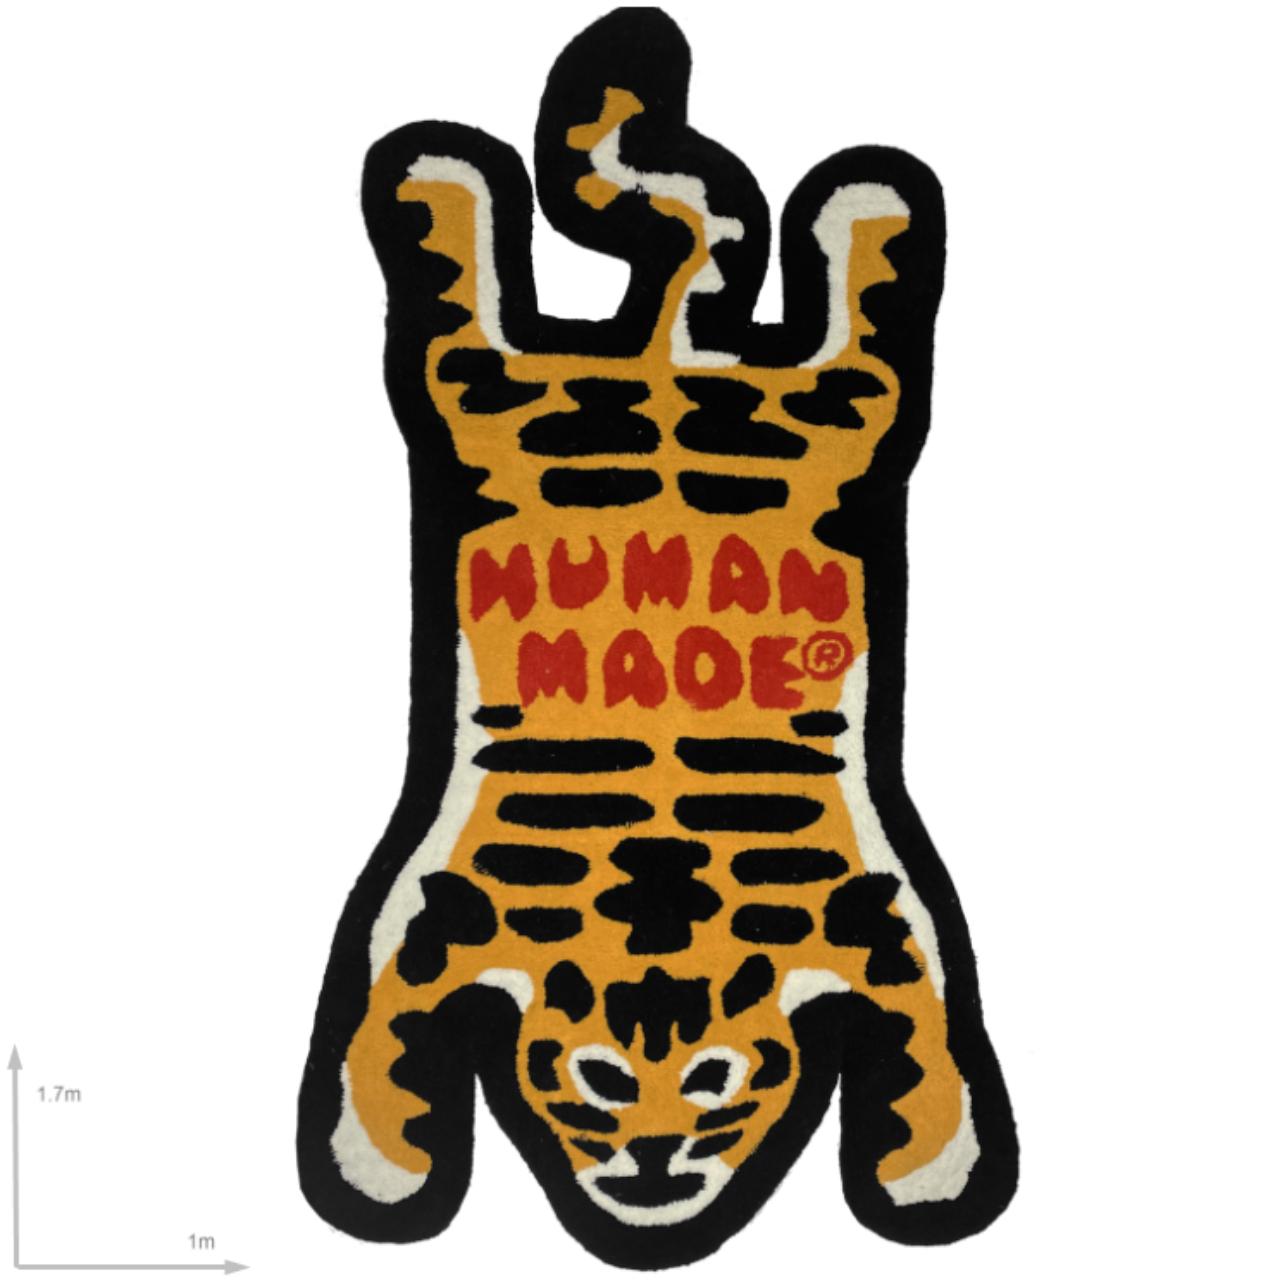 Human made Tiger Rug, Guru Tiger Rug